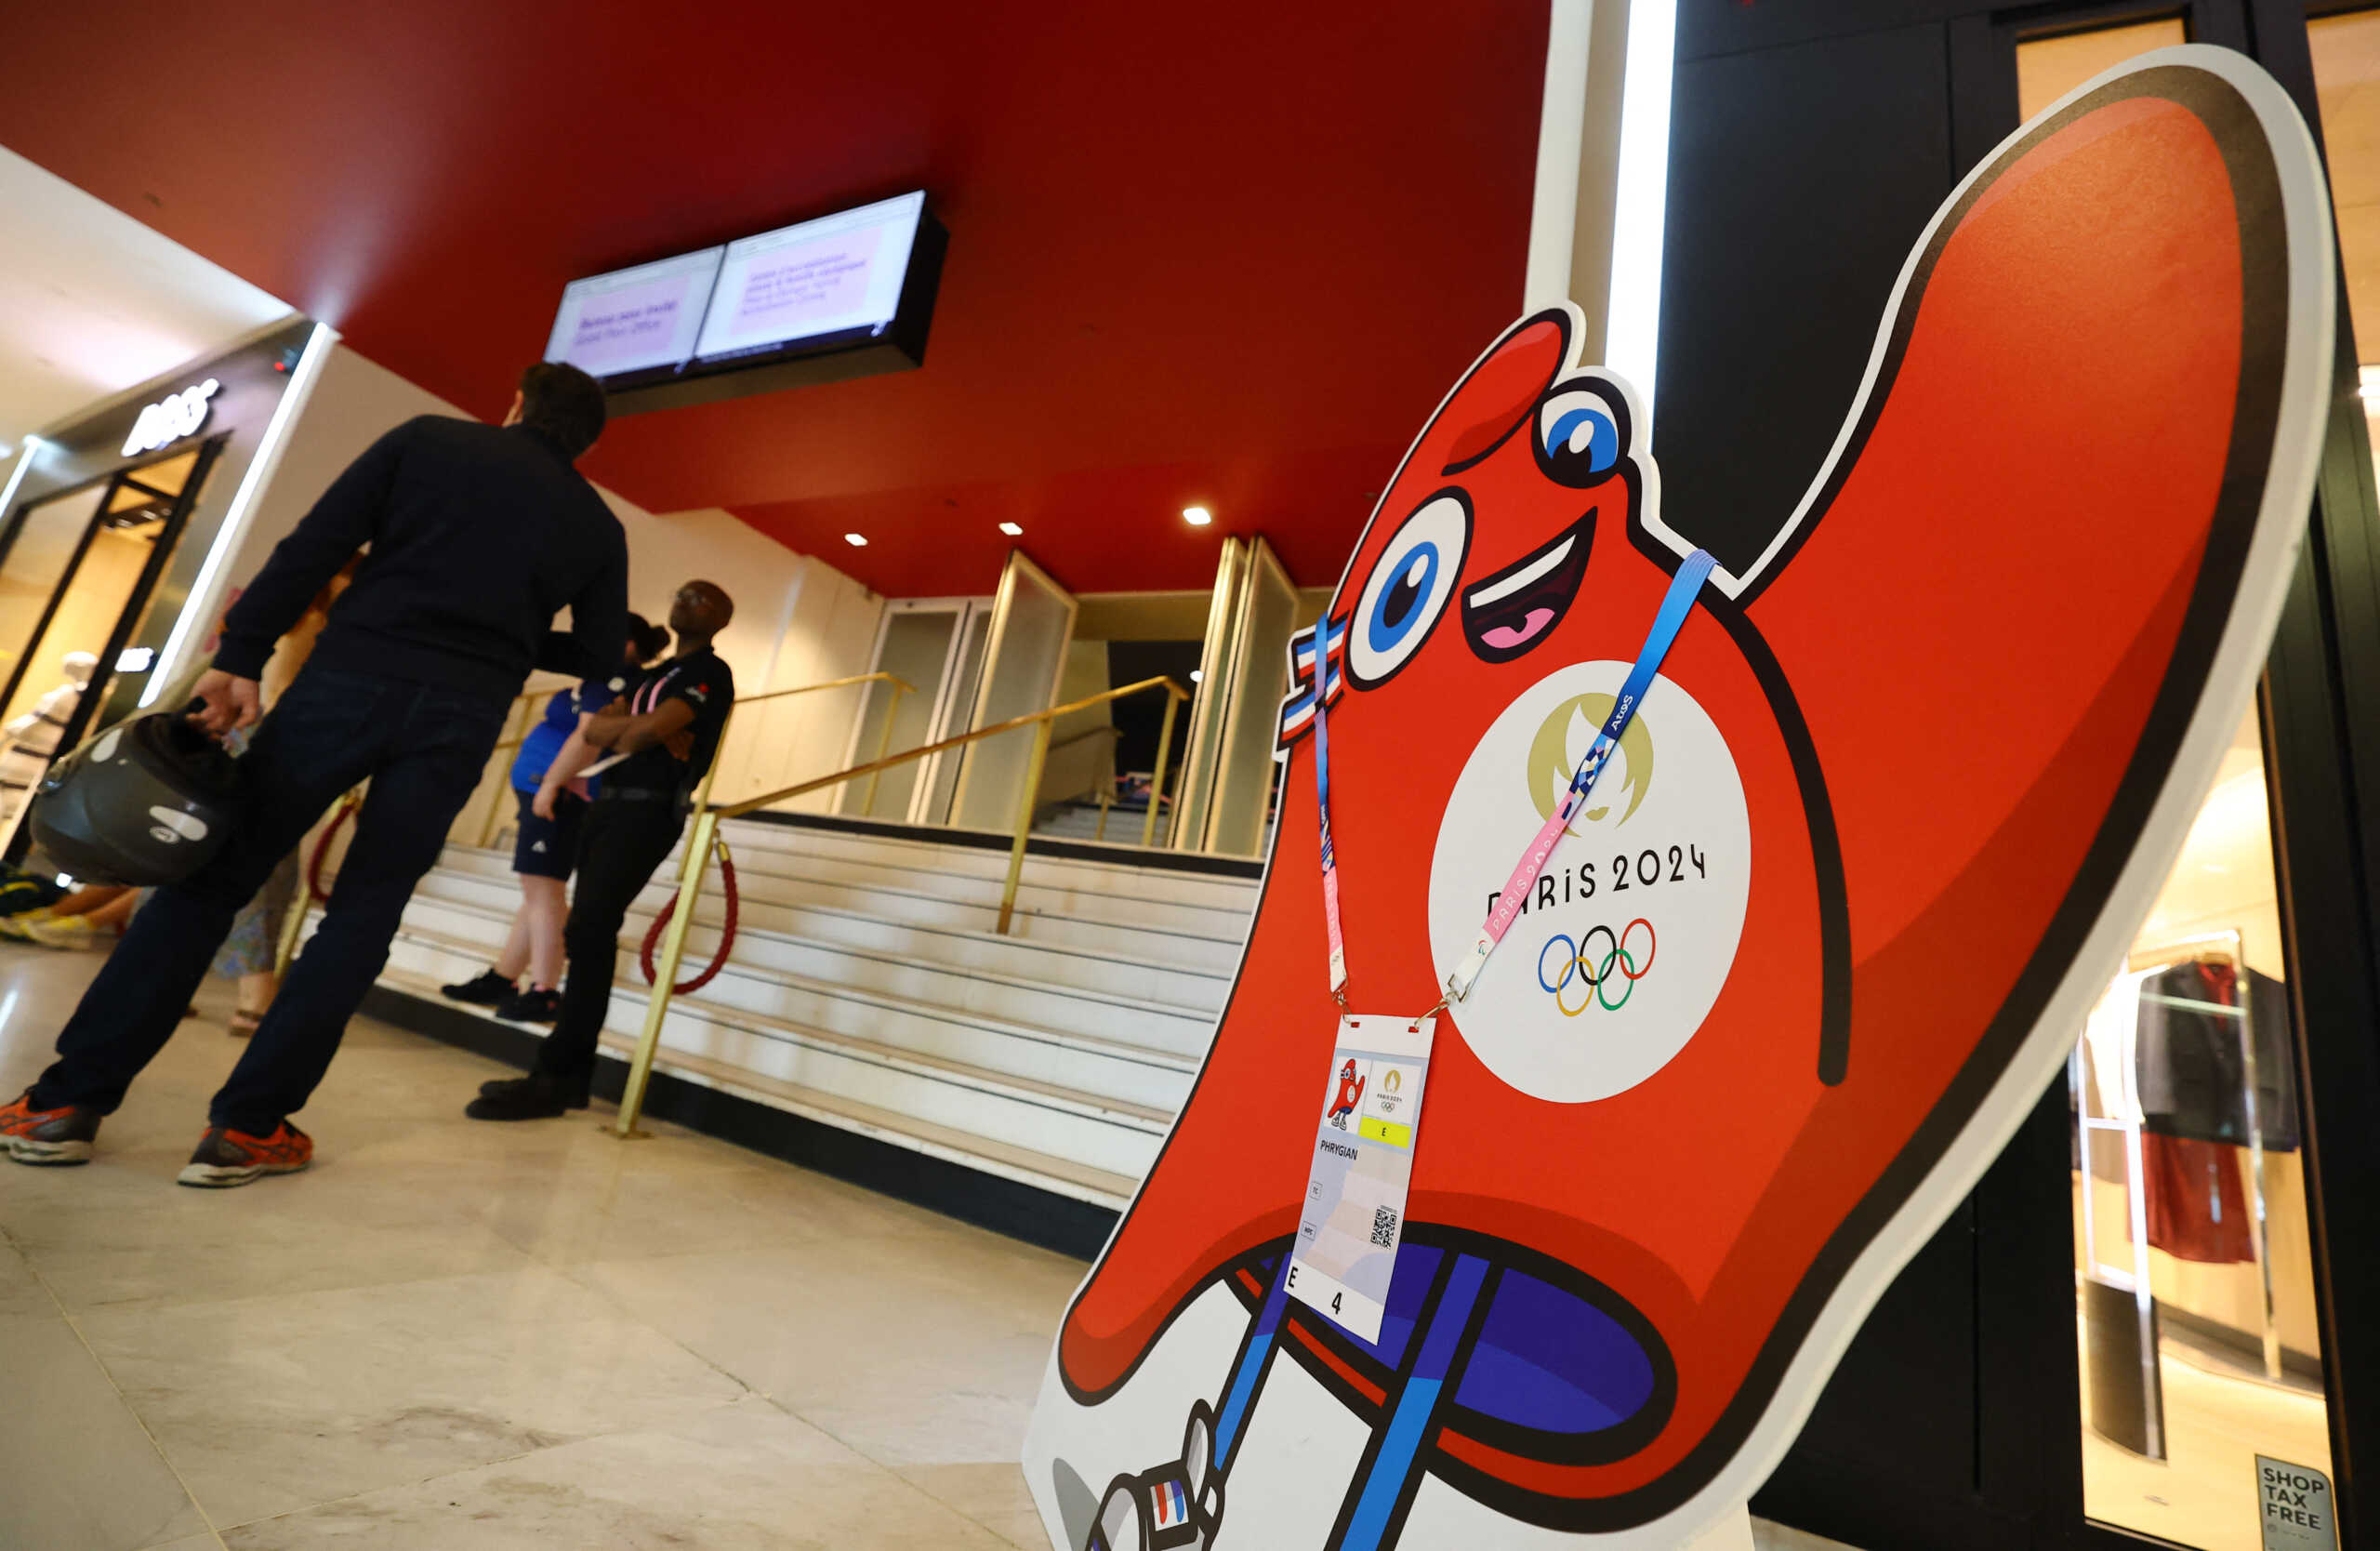 Ολυμπιακοί Αγώνες 2024: Το πρόβλημα στη Microsoft επηρέασε τα πληροφοριακά συστήματα της διοργάνωσης